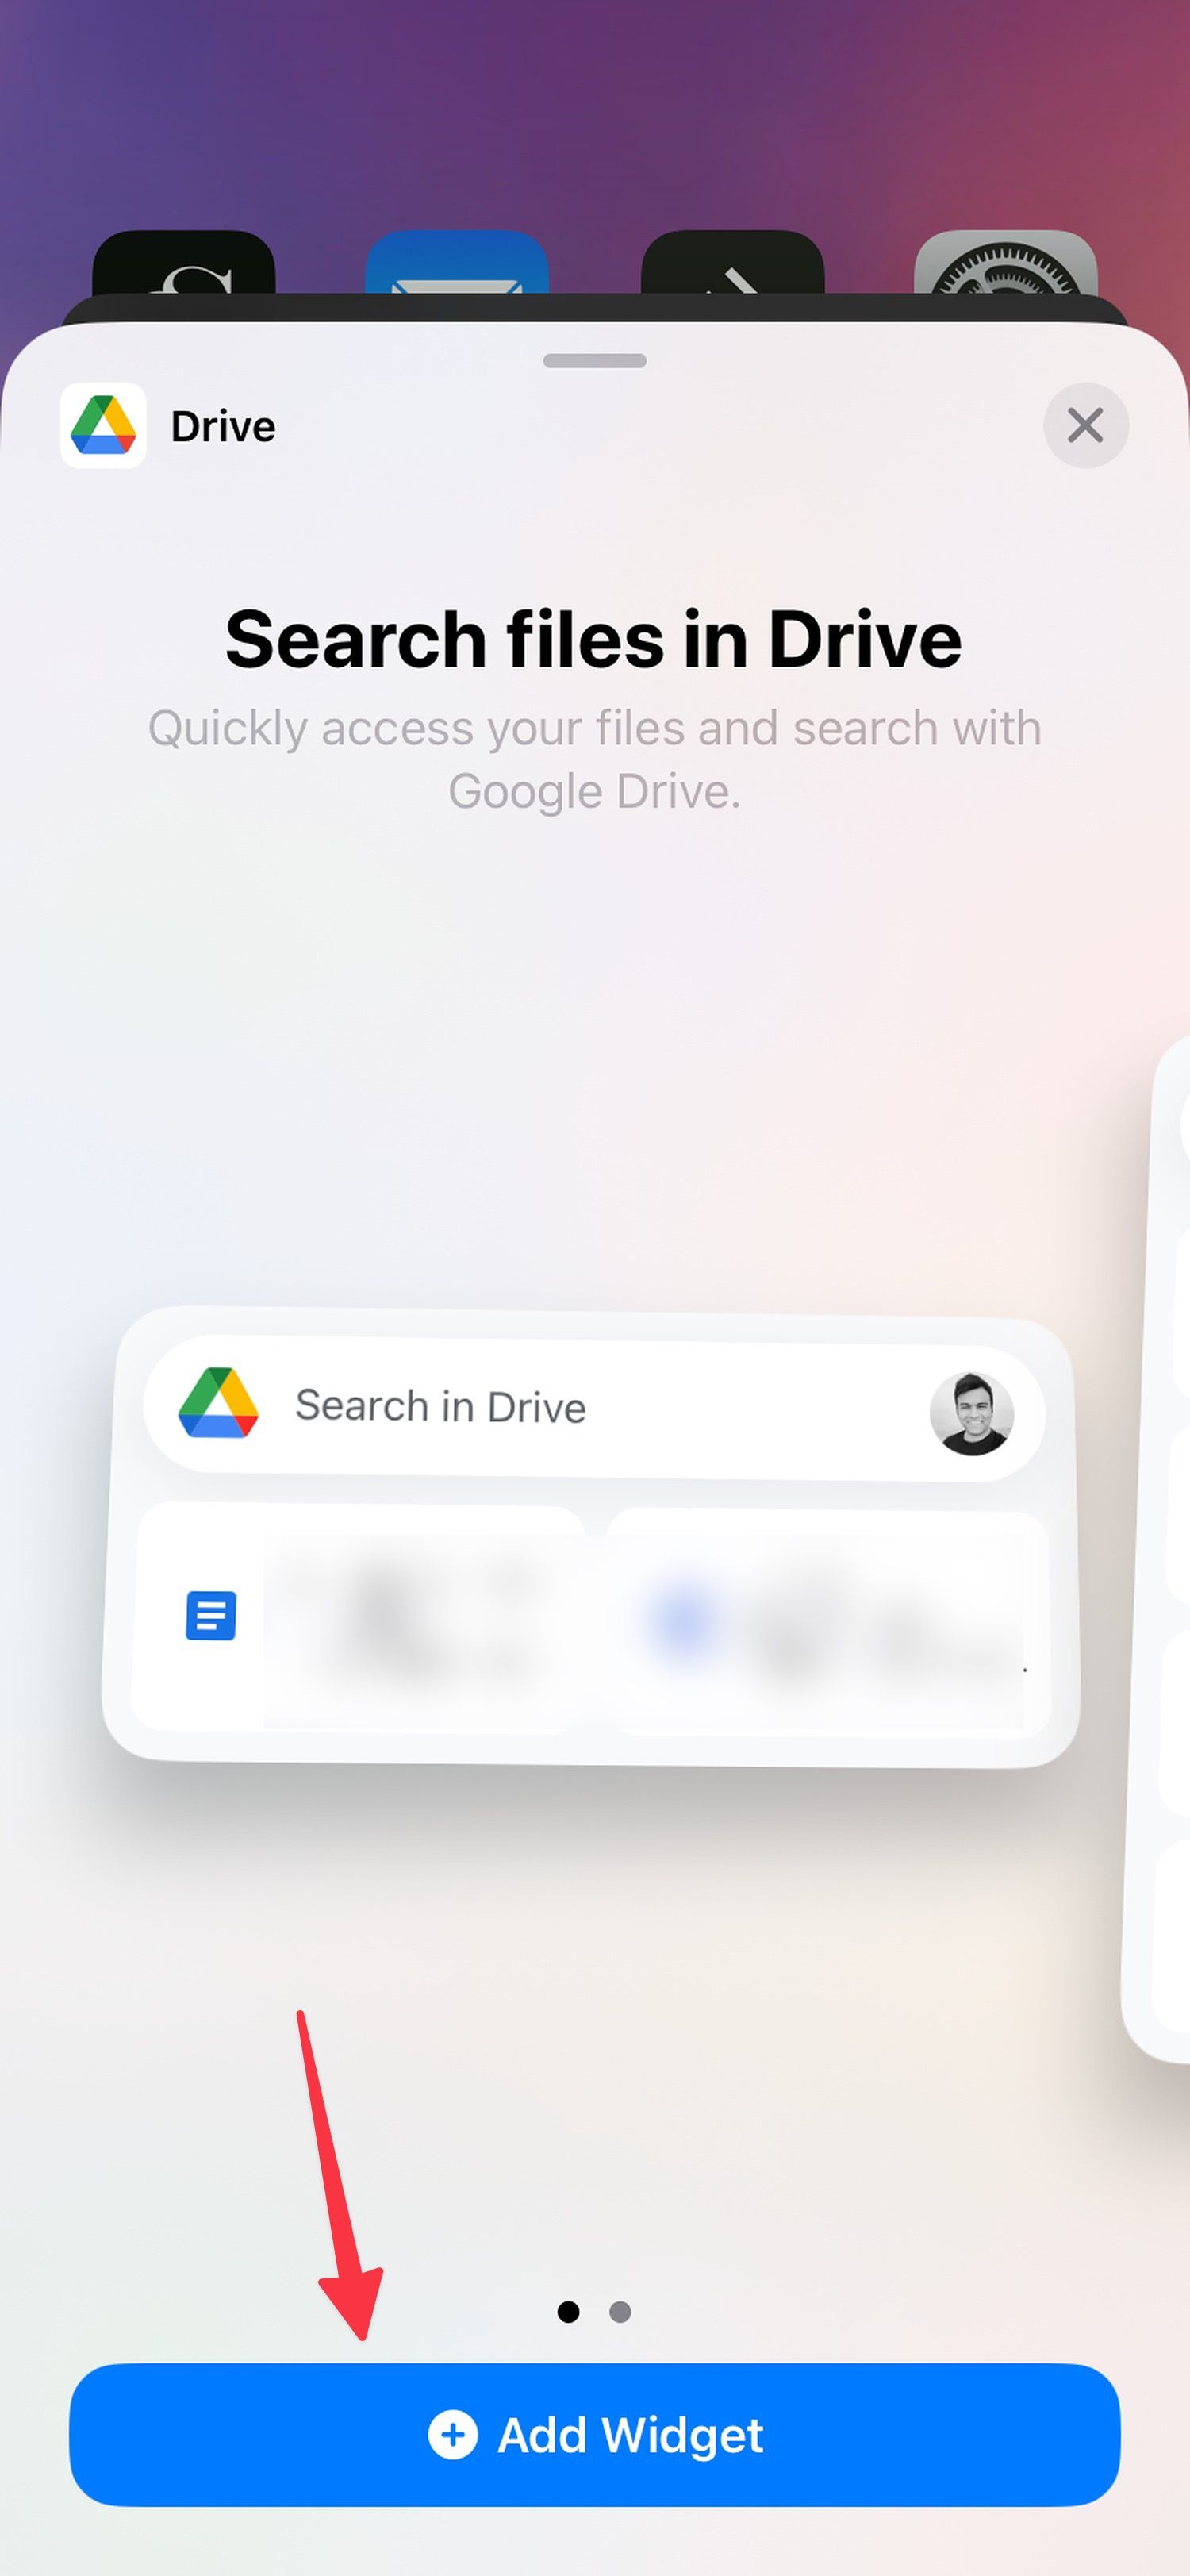 Adicione o widget do Google Drive à tela inicial do seu telefone.